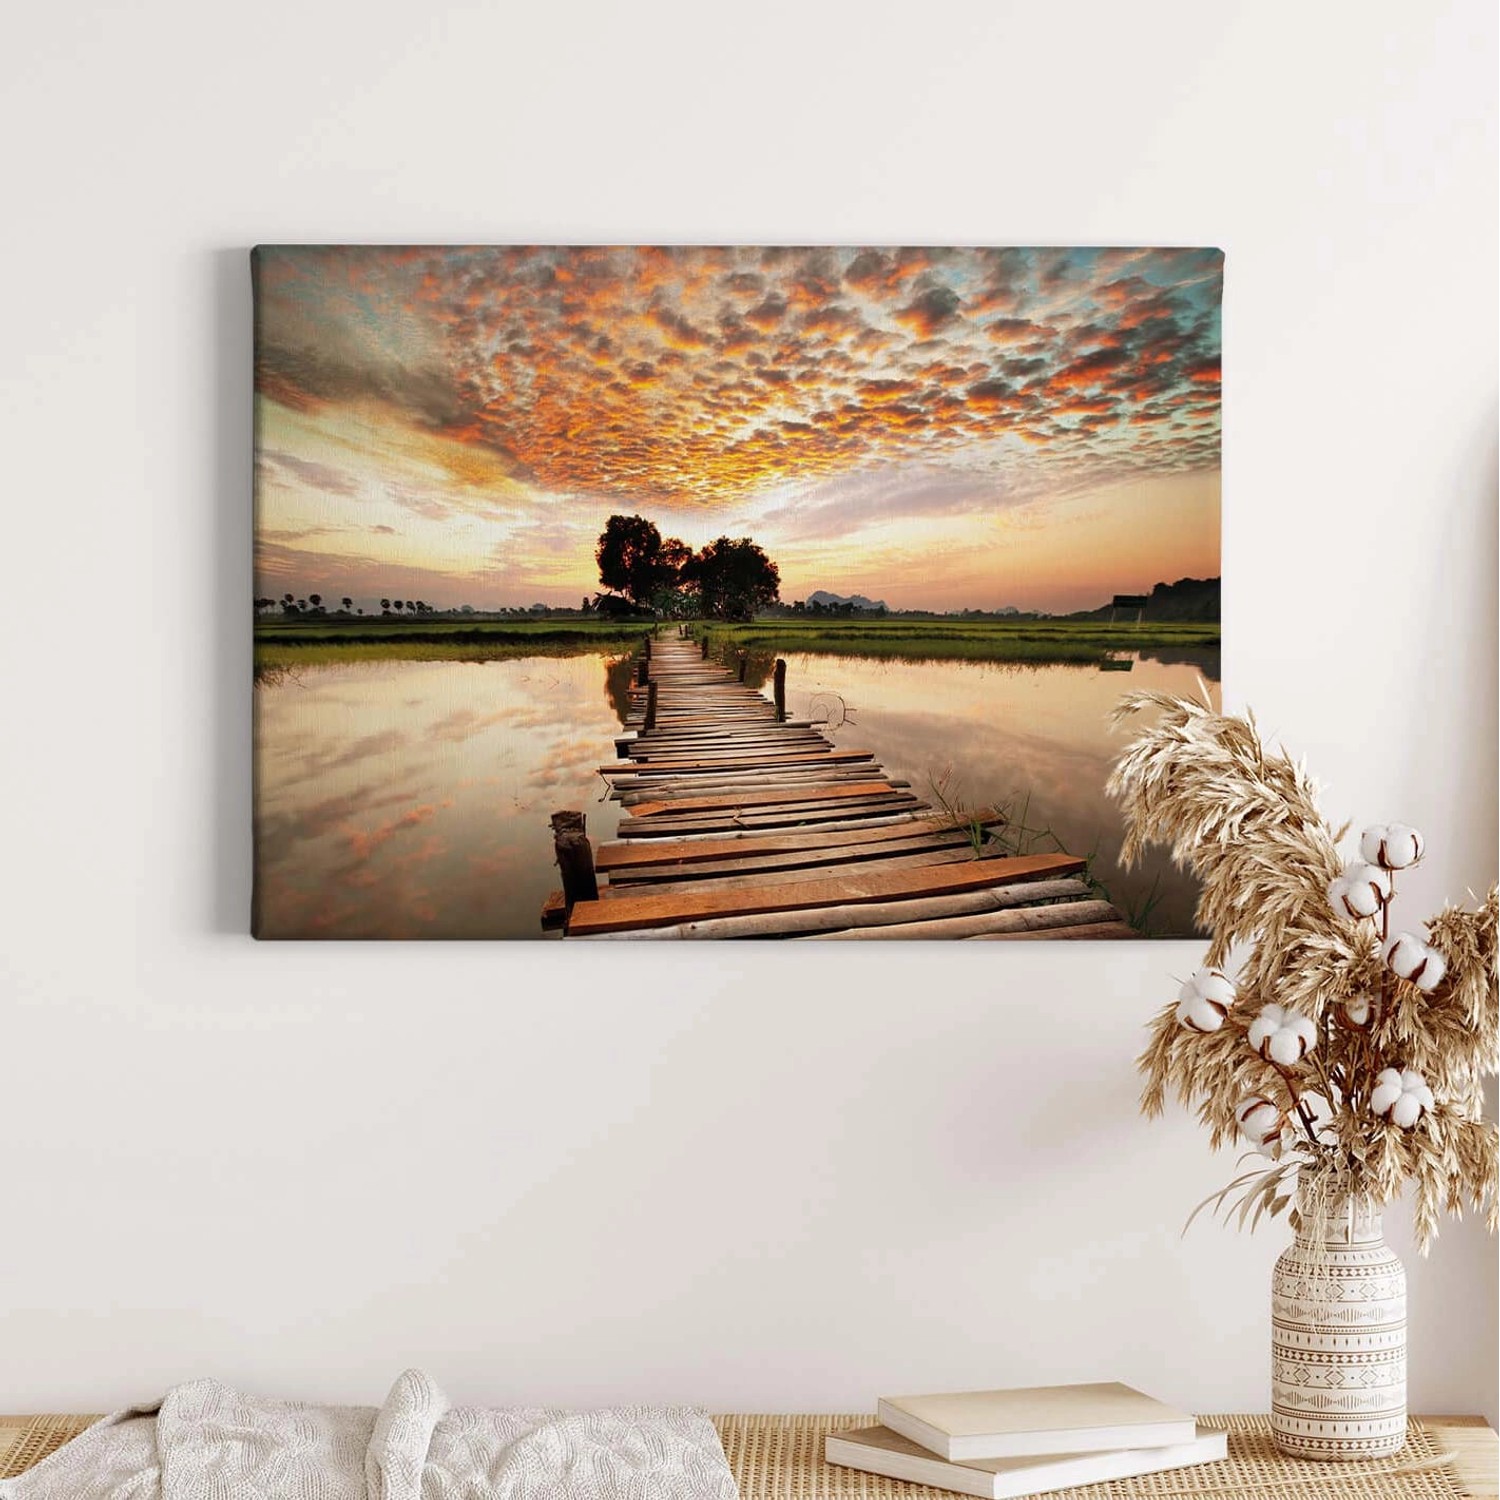 Bricoflor Leinwand Bild Mit Steg Am See Sonnenuntergang Leinwandbild In Pastellfarben Landschaft Wandbild In Abendstimmu